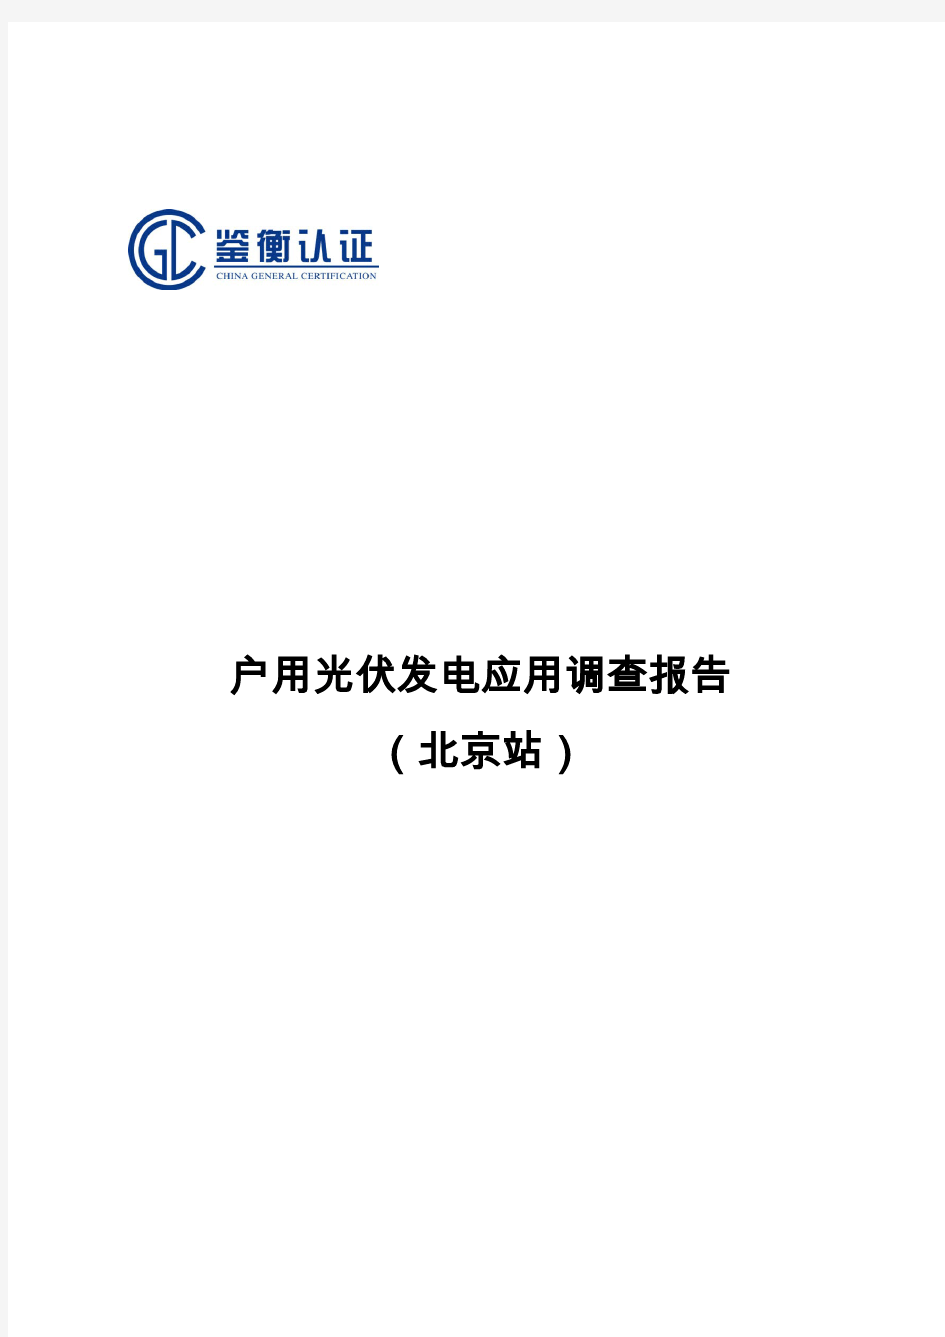 全国户用光伏发电应用调查分析报告-北京站-鉴衡认证